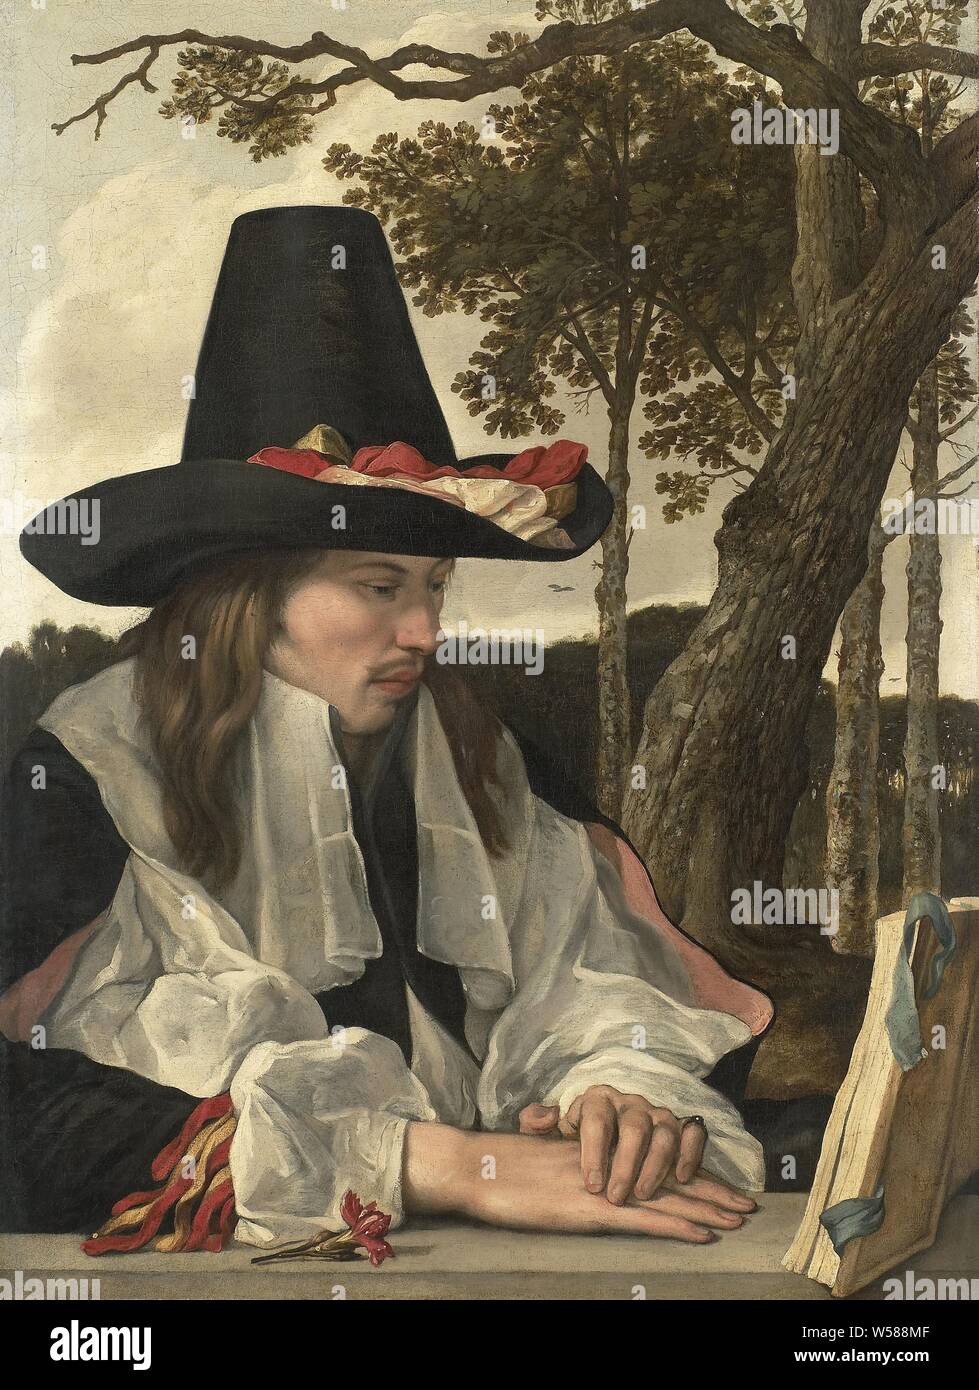 Ein Mann Lesen, ein junger Mann sitzt auf der rechten Seite hinter einem Stein Geländer, lesen ein offenes Buch auf der rechten Seite. Der Mann ist in der halben Körper vorgestellt, auf dem Kopf eine hohe schwarze Hut mit Bändern. Es ist eine rote Nelke auf der Balustrade, mit Bäumen, Lesen, Buch im Hintergrund, anonym, Nördliche Niederlande, C. 1660, Leinwand, H 88 cm x W 66,5 cm, d 9,5 cm Stockfoto